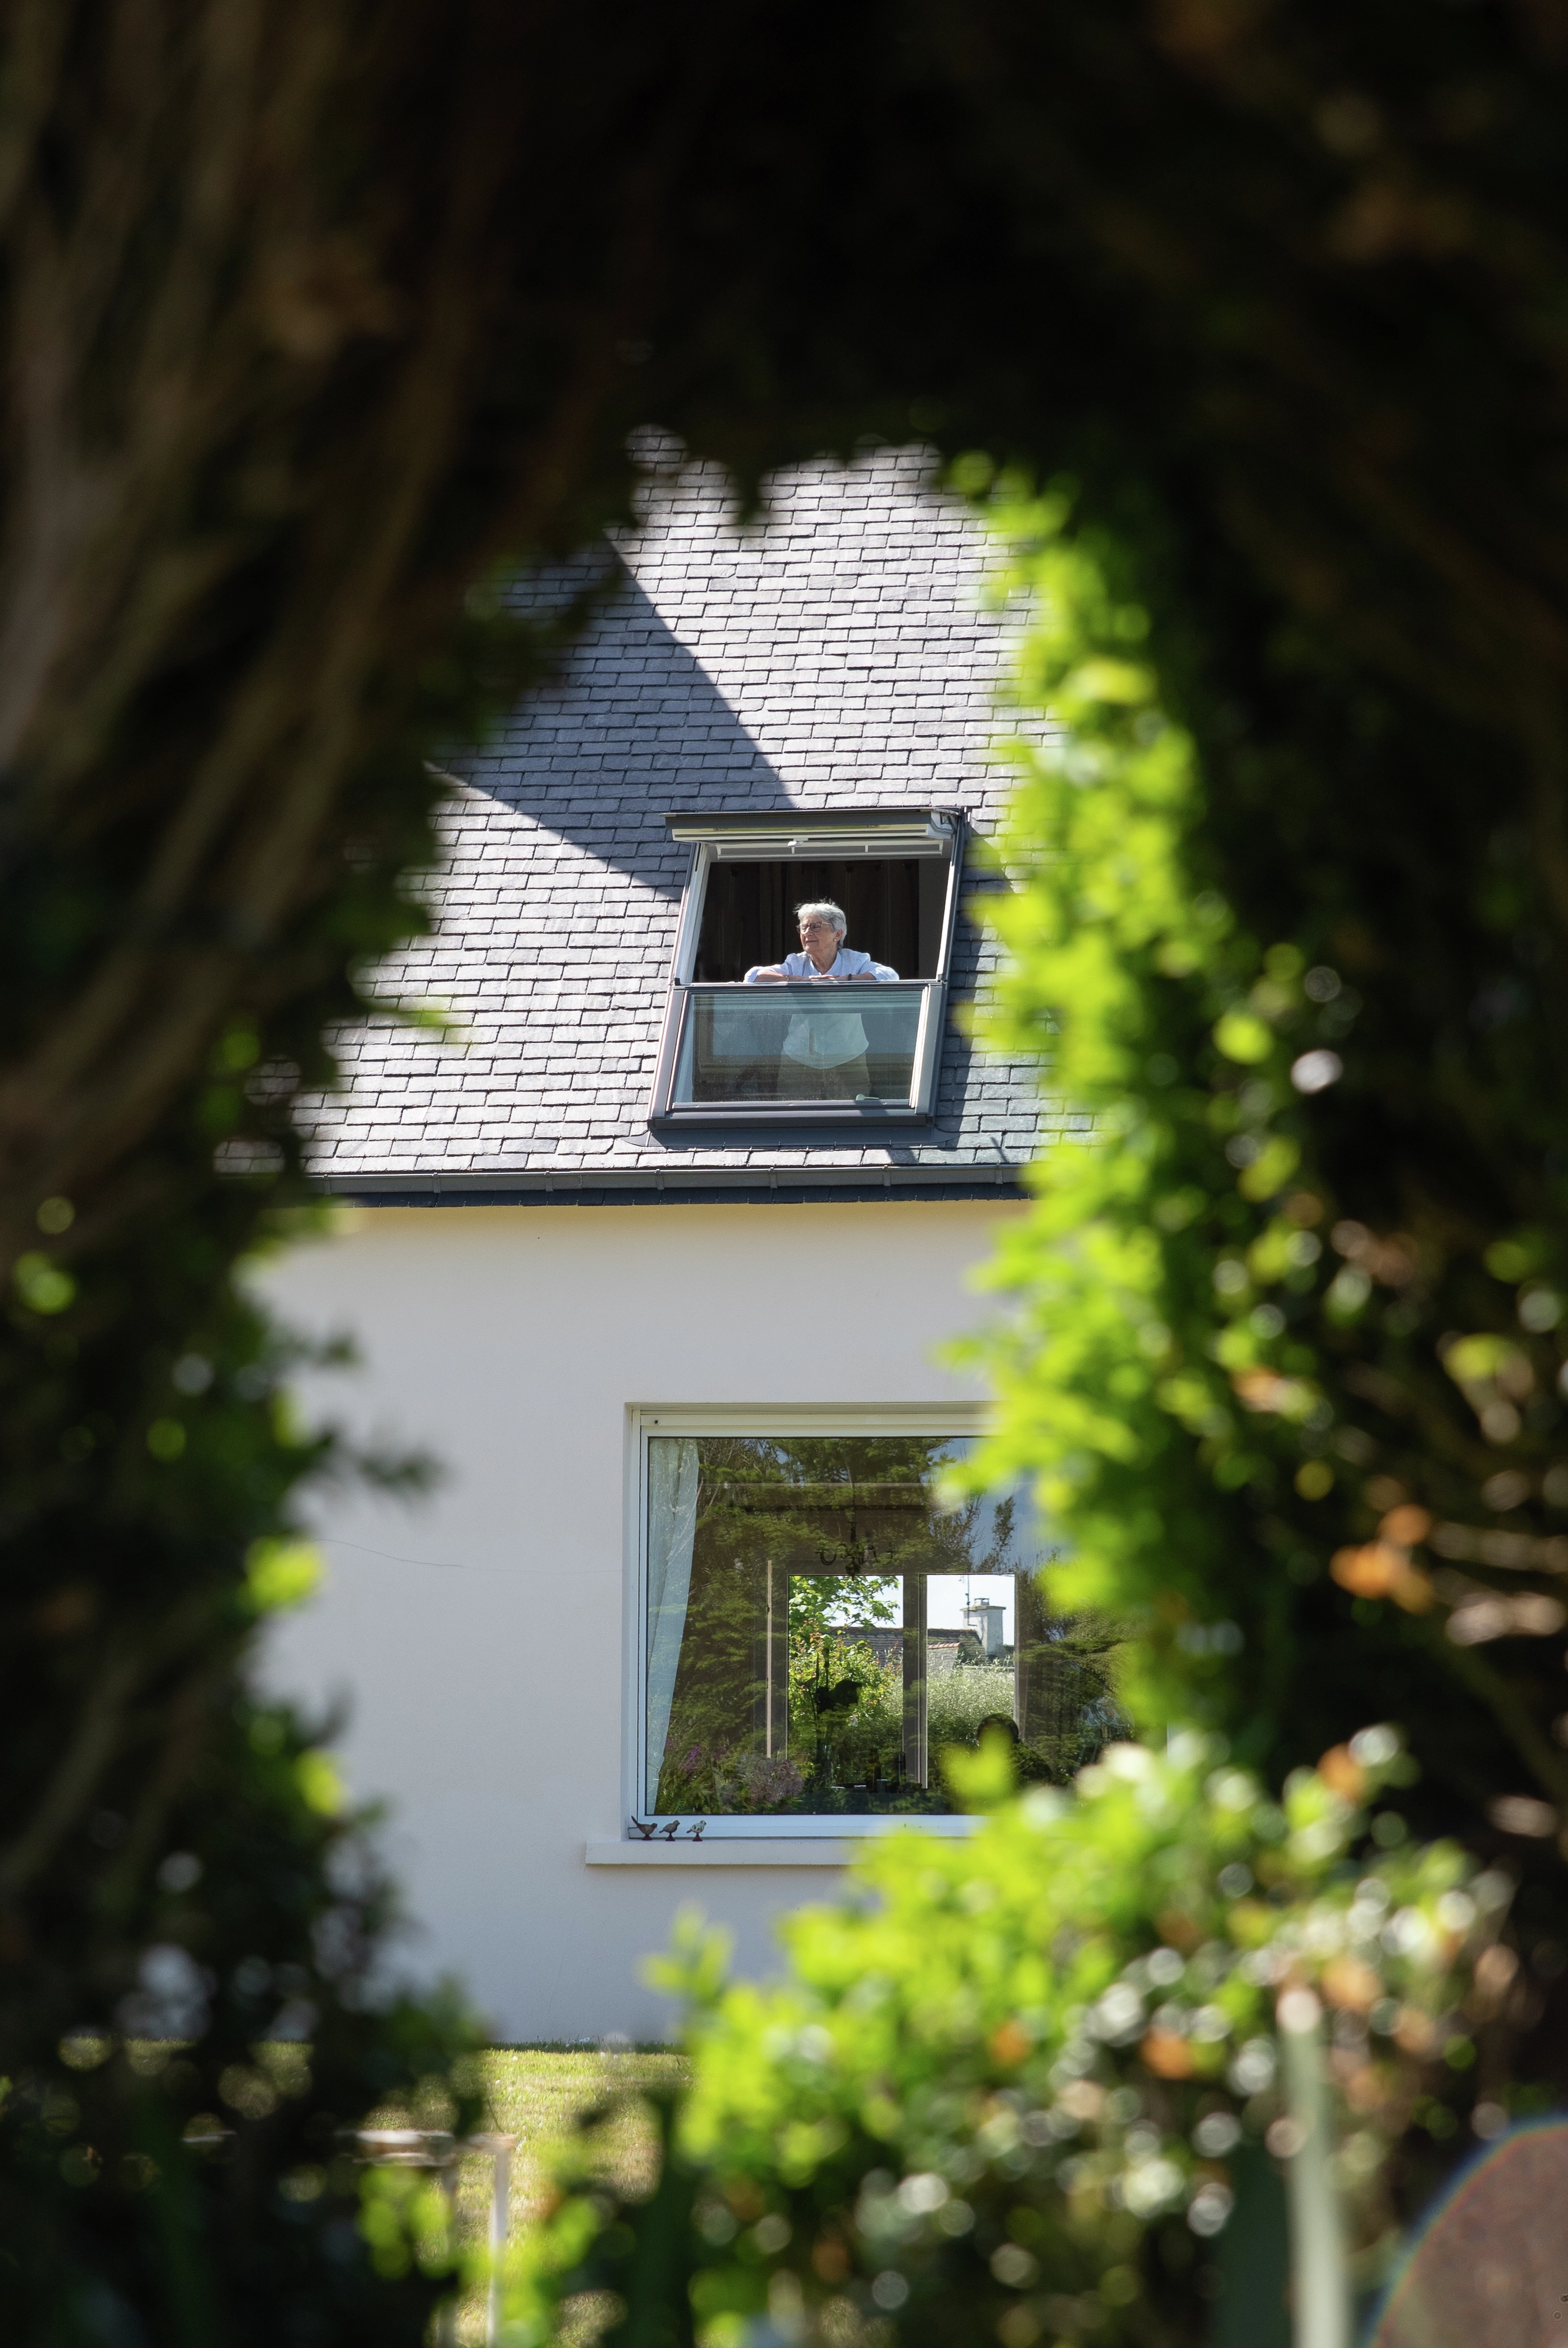 Fenêtre de toit VELUX sur une maison résidentielle, encadrée par un feuillage verdoyant dans un cadre serein.